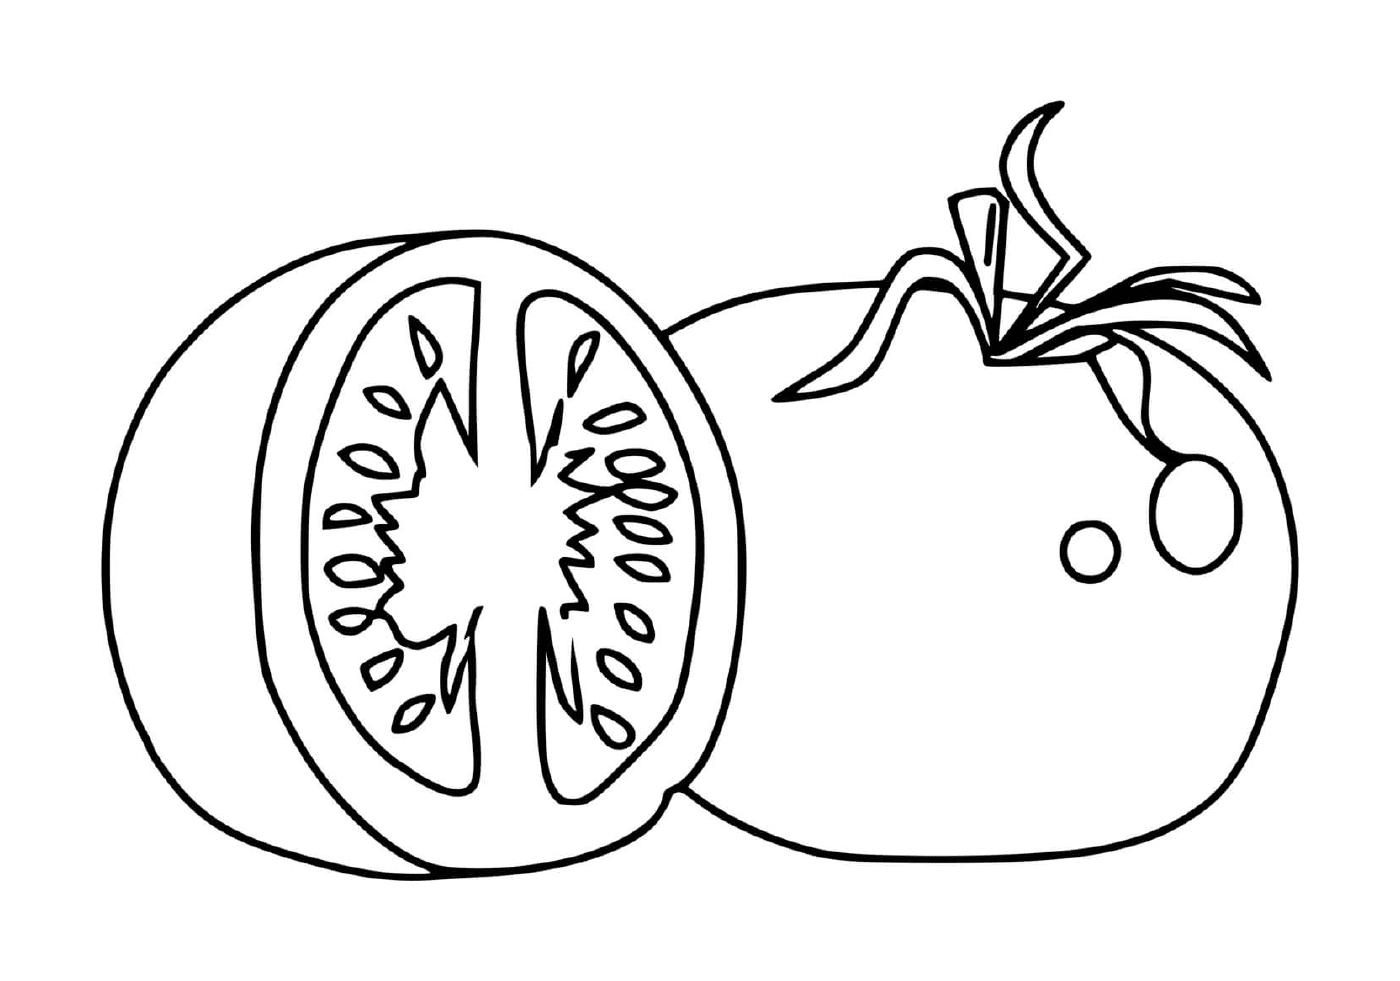  Pomodori freschi e domestici 